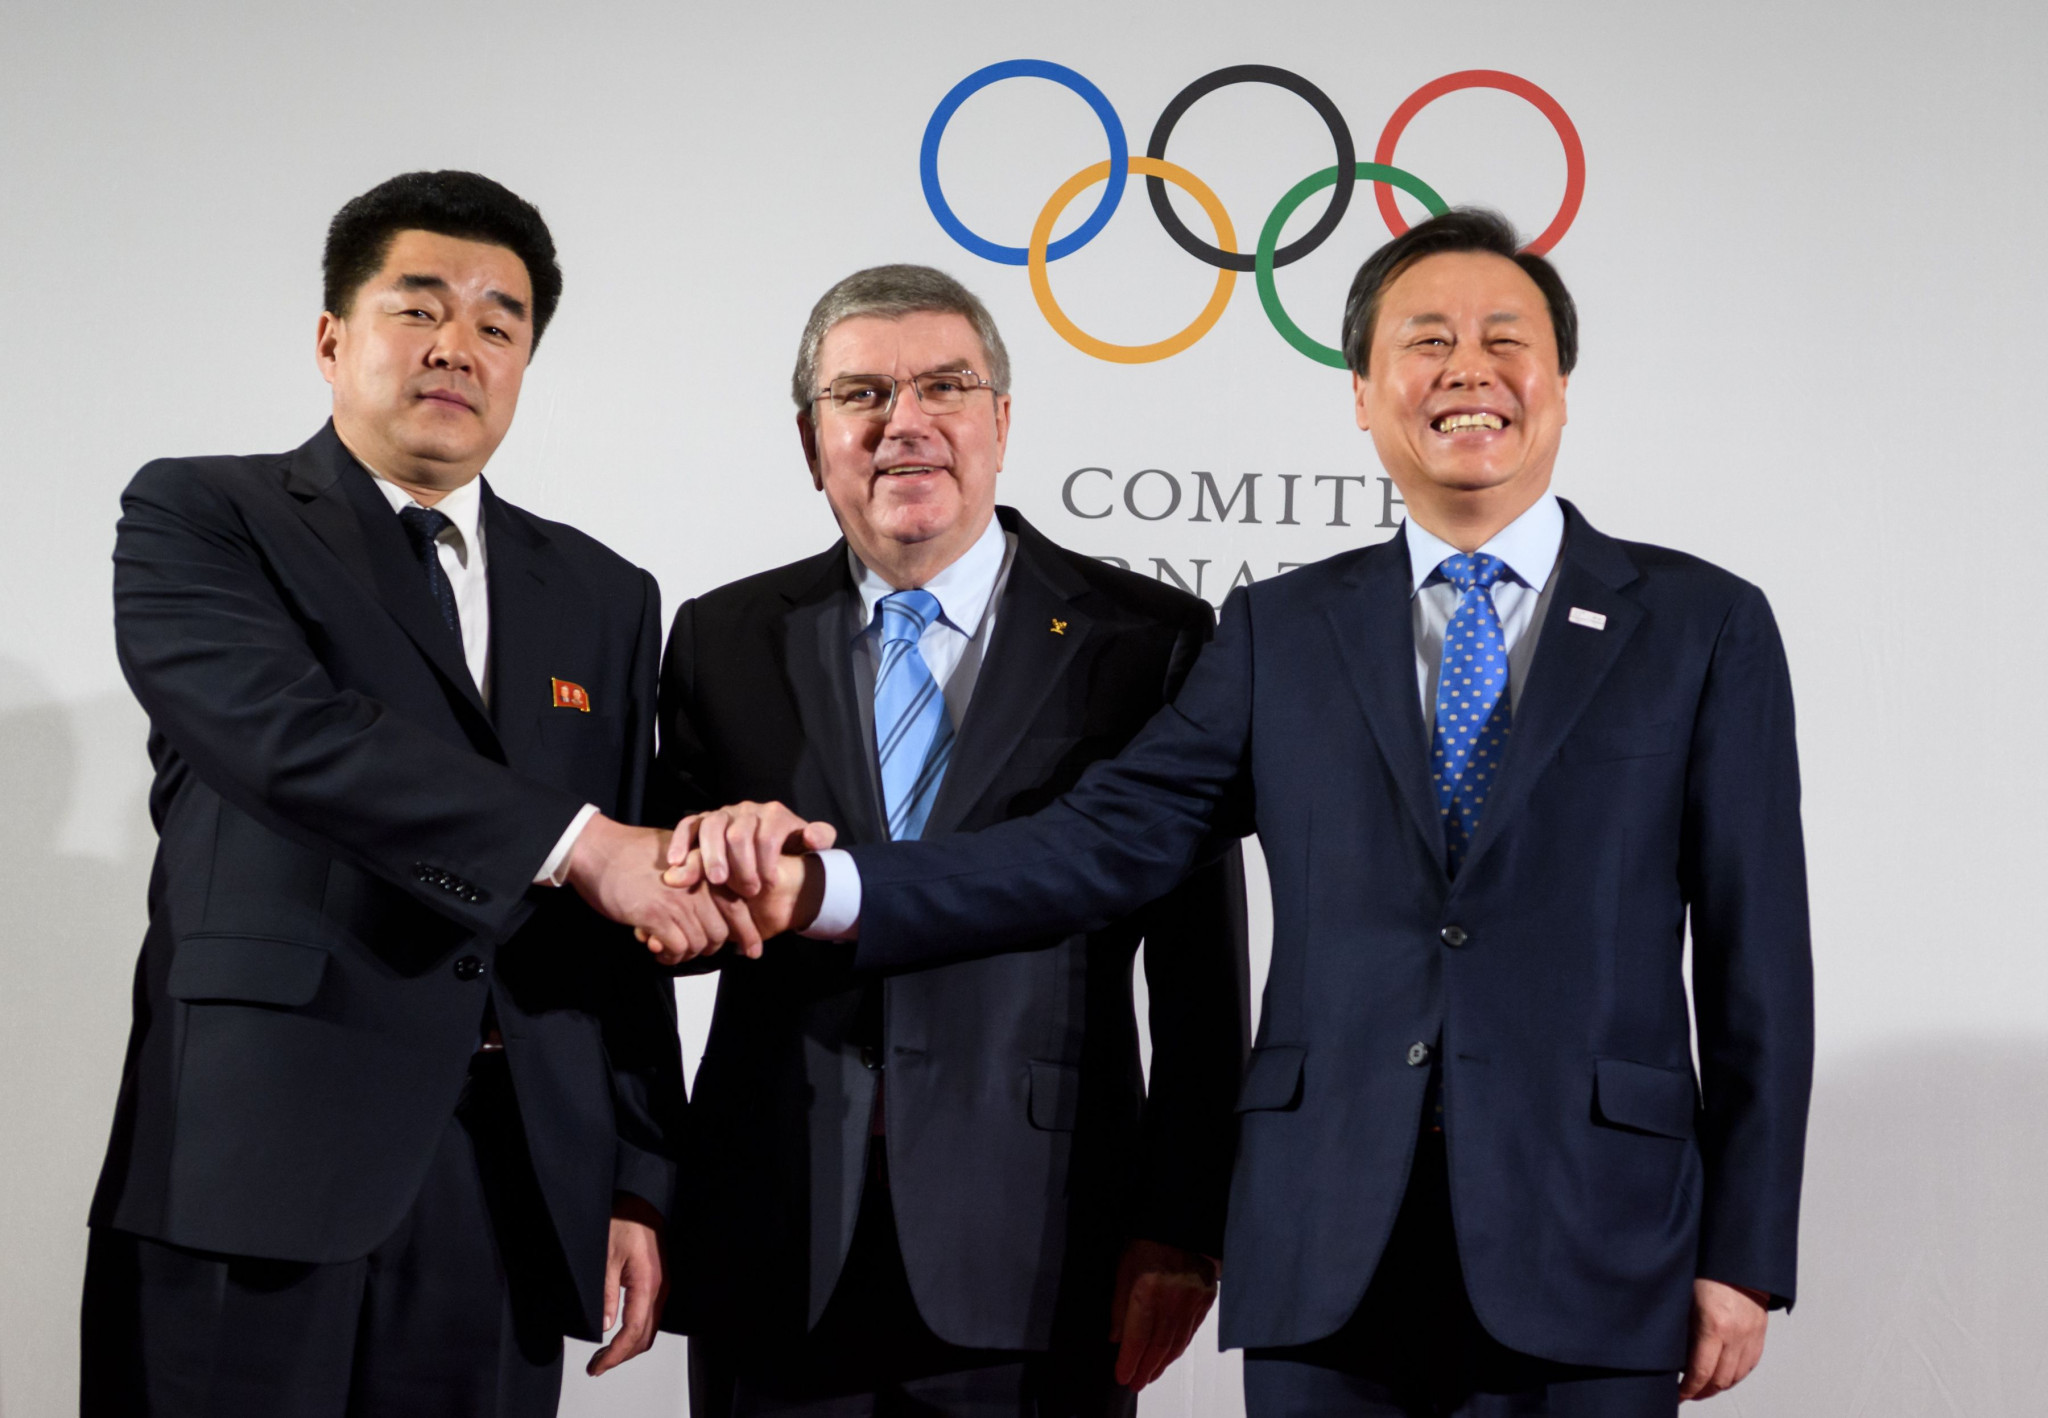 تمایل وزیر ورزش کره جنوبی برای میزبانی مشترک بازیهای 2032 با کره شمالی